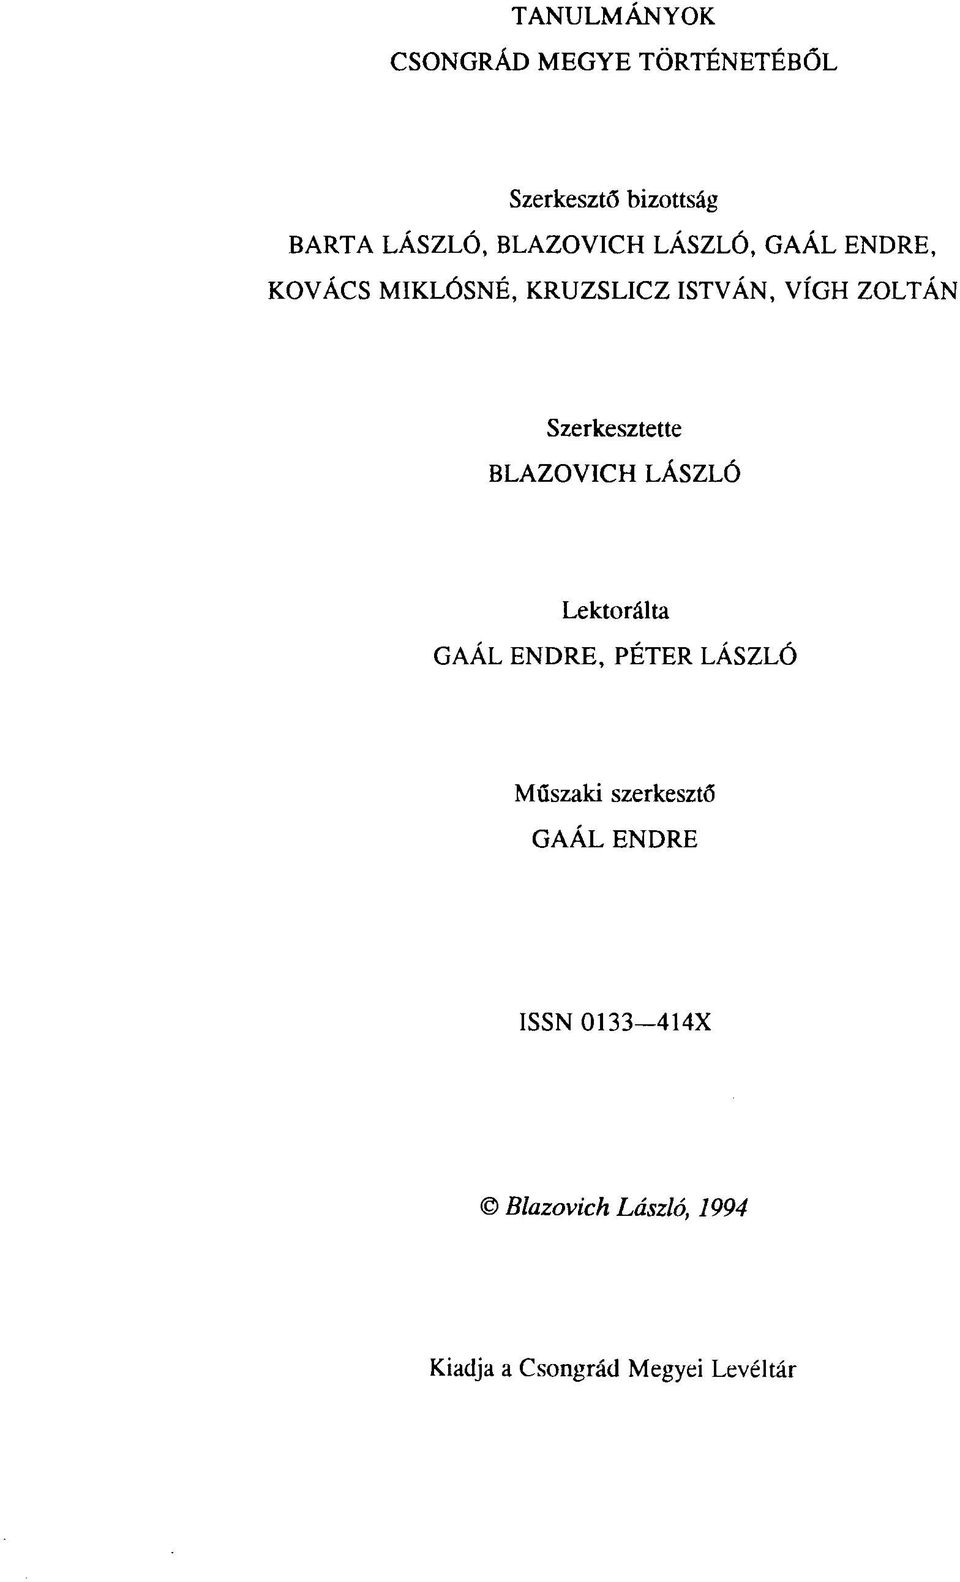 Szerkesztette BLAZOVICH LÁSZLÓ Lektorálta GAÁL ENDRE, PÉTER LÁSZLÓ Műszaki